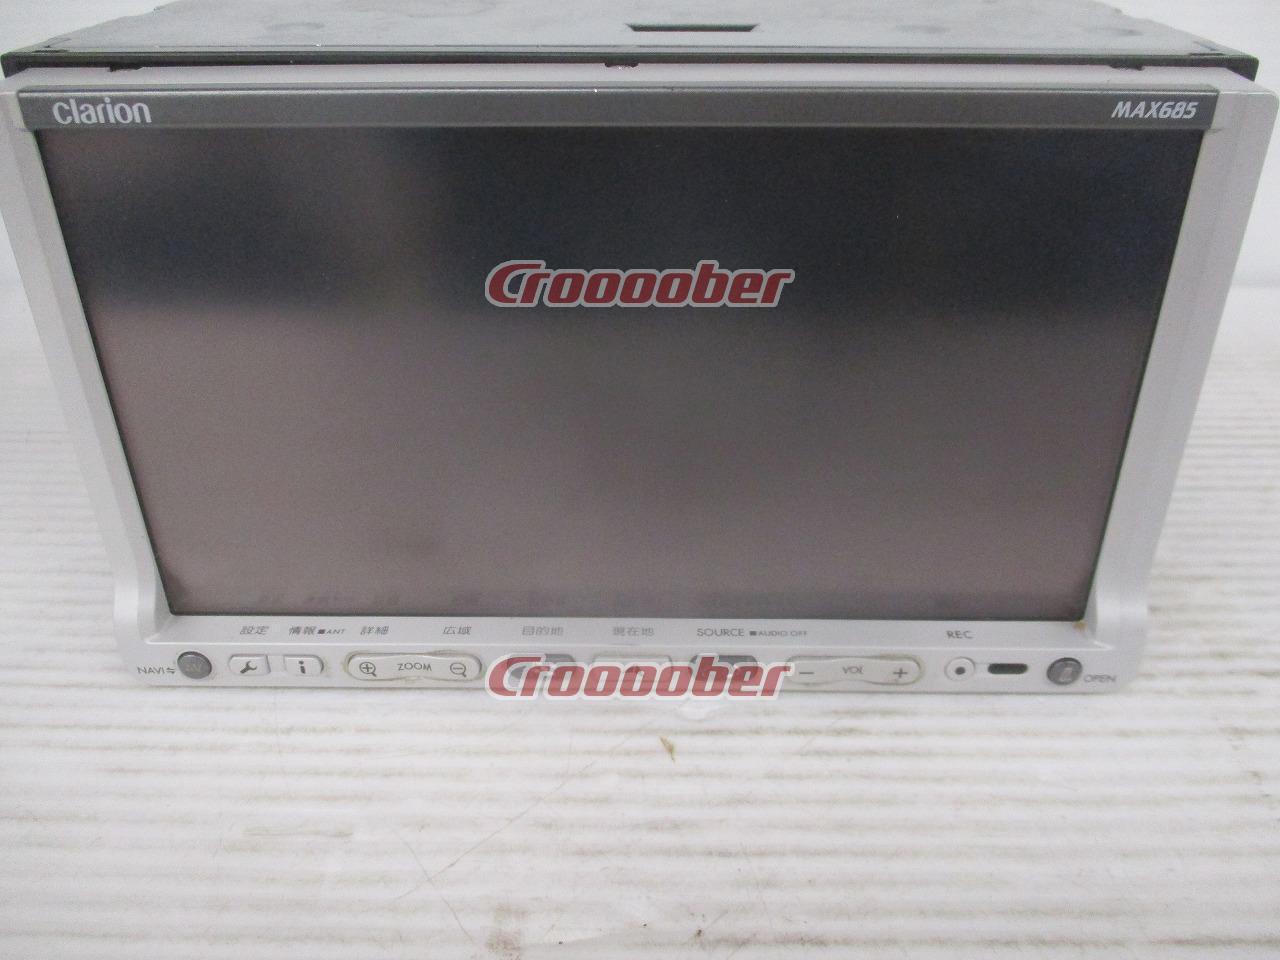 クラリオン MAX685 ワンセグ DVD | butiderma.com